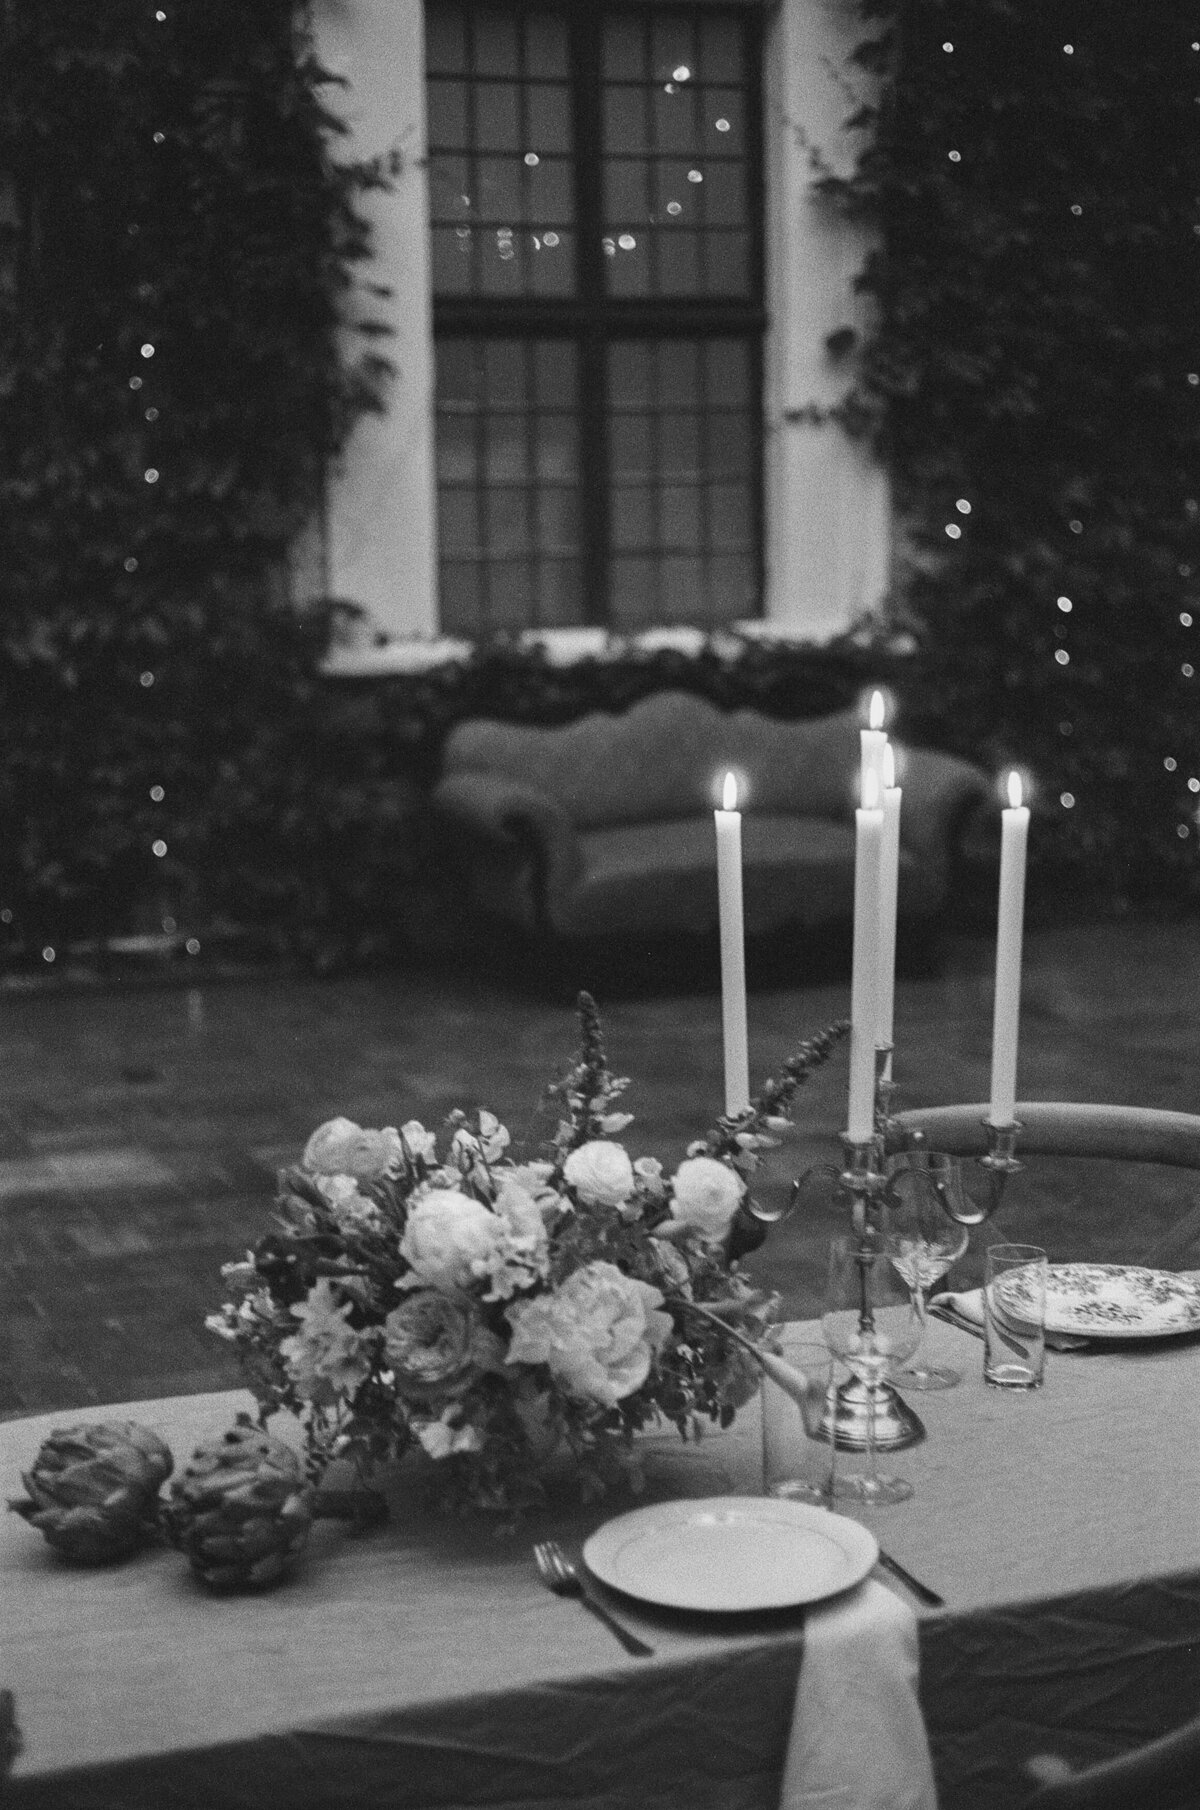 Cérémonie de mariage dans une ambiance moody, avec une table romantique décorée de fleurs.